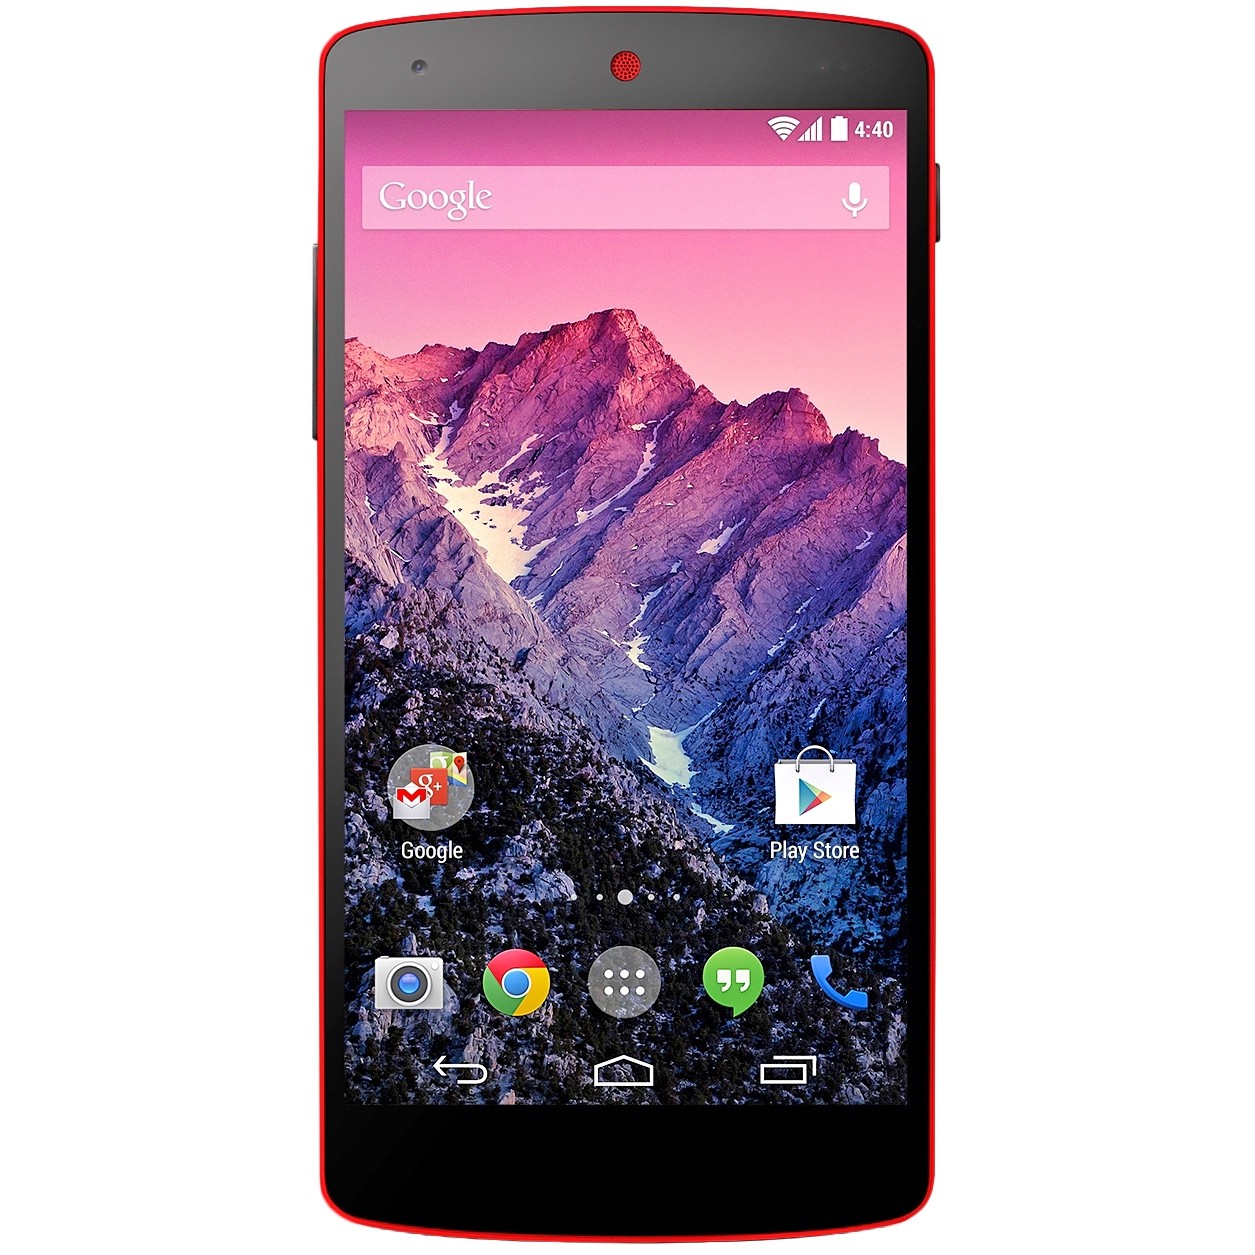 LG Nexus 5 16GB (Red) - зображення 1